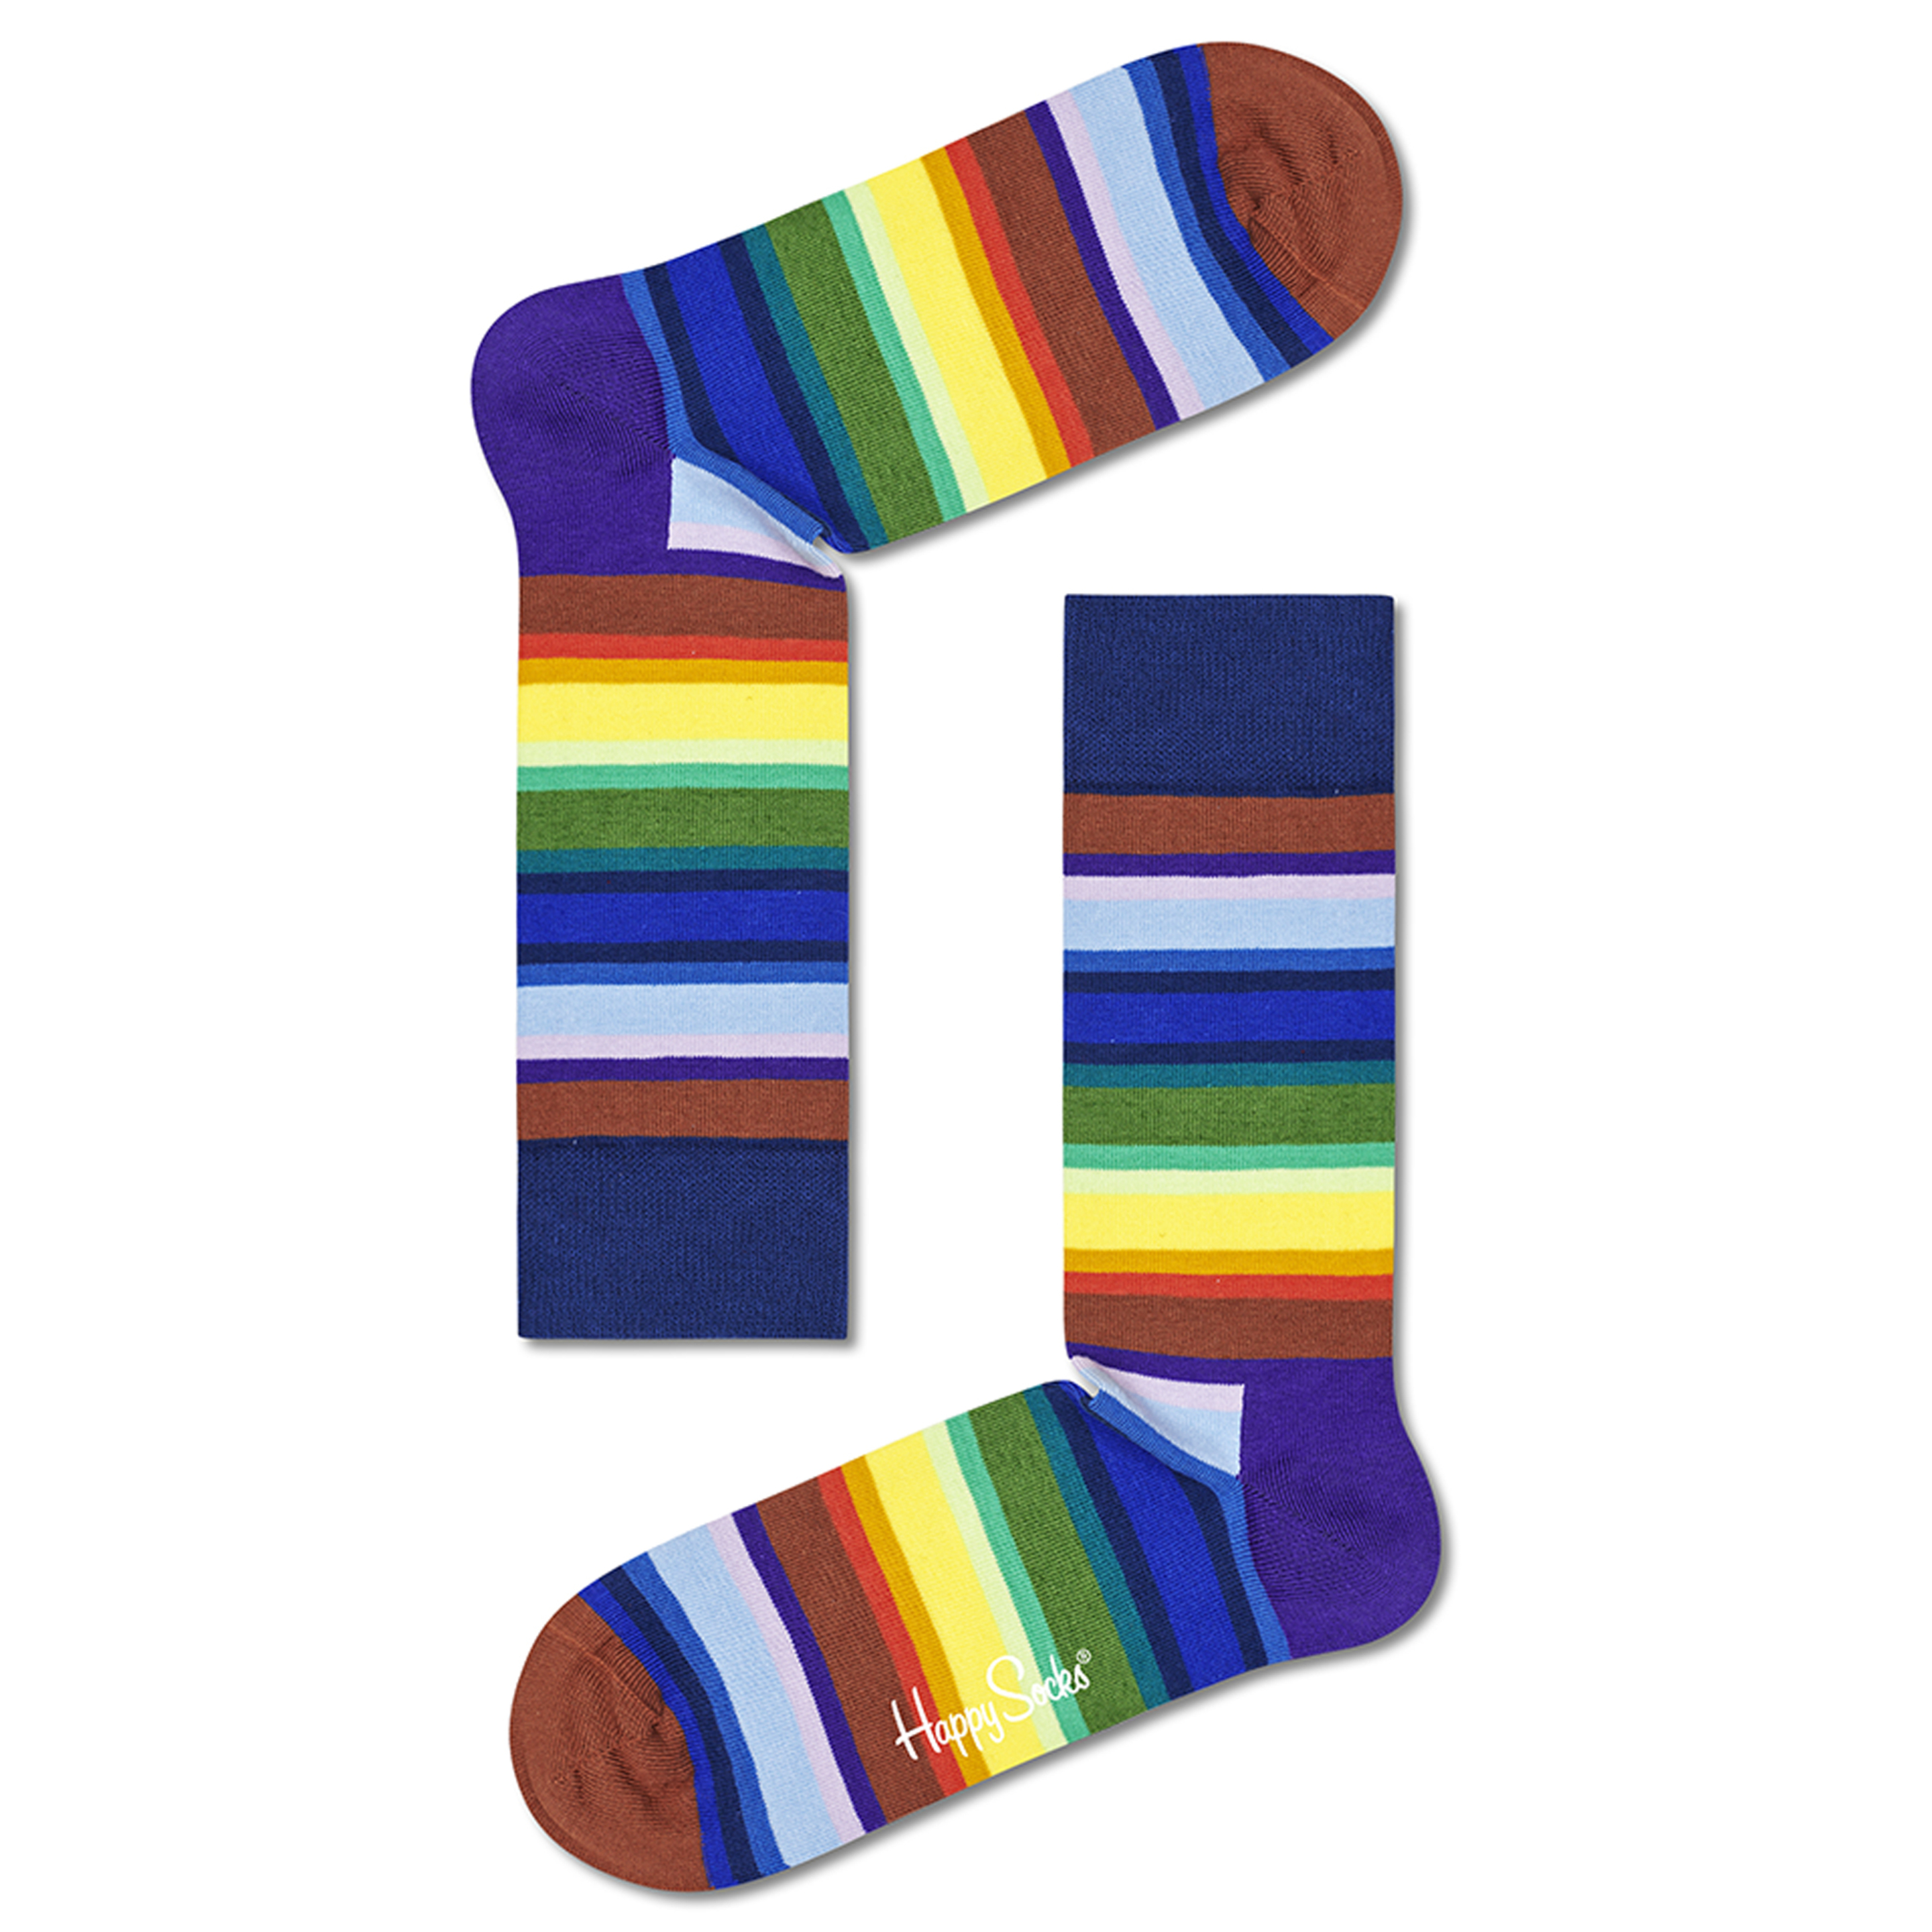 Calcetines Happy Socks Coloridos - Multicolor  MKP